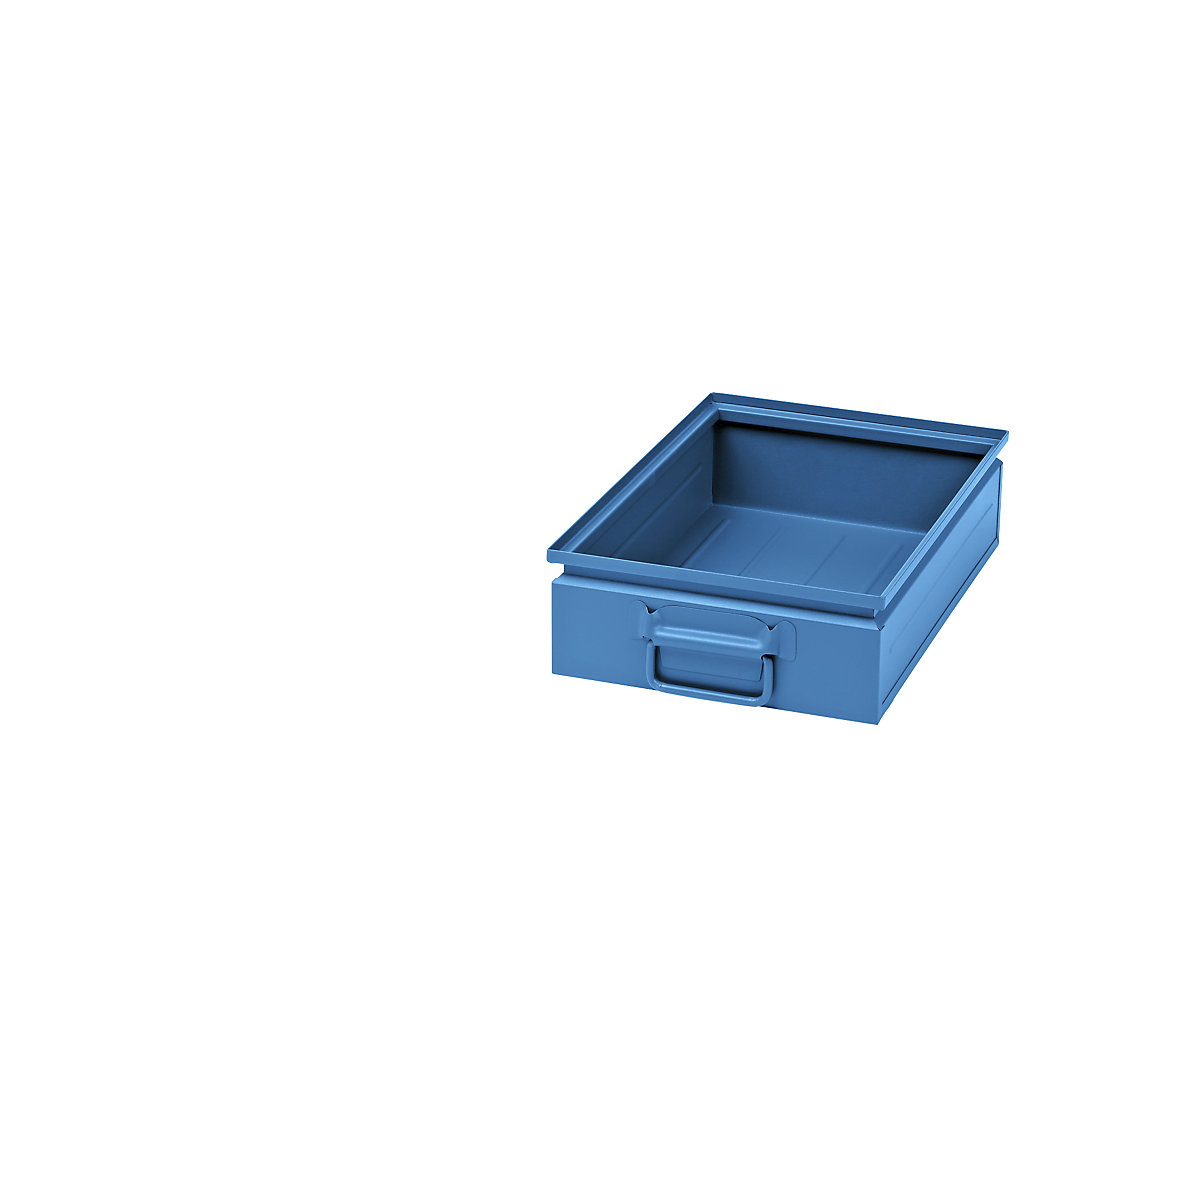 Stapelkasten aus Stahlblech, Volumen ca. 15 l, lichtblau RAL 5012-5